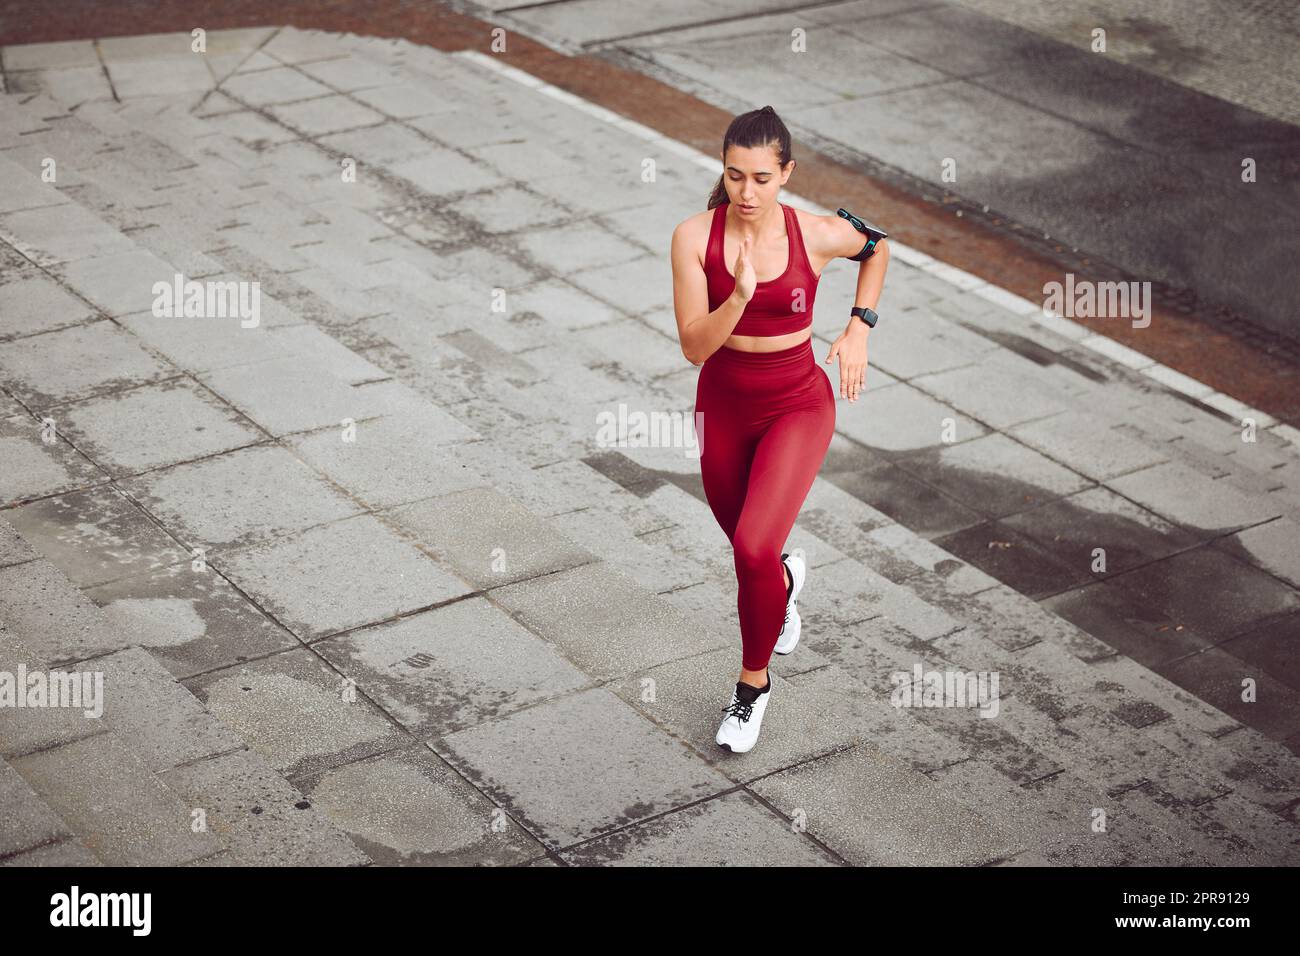 Son niveau de forme physique est en hausse. Photo en grand angle d'une jeune athlète féminine attirante qui court en plein air. Banque D'Images